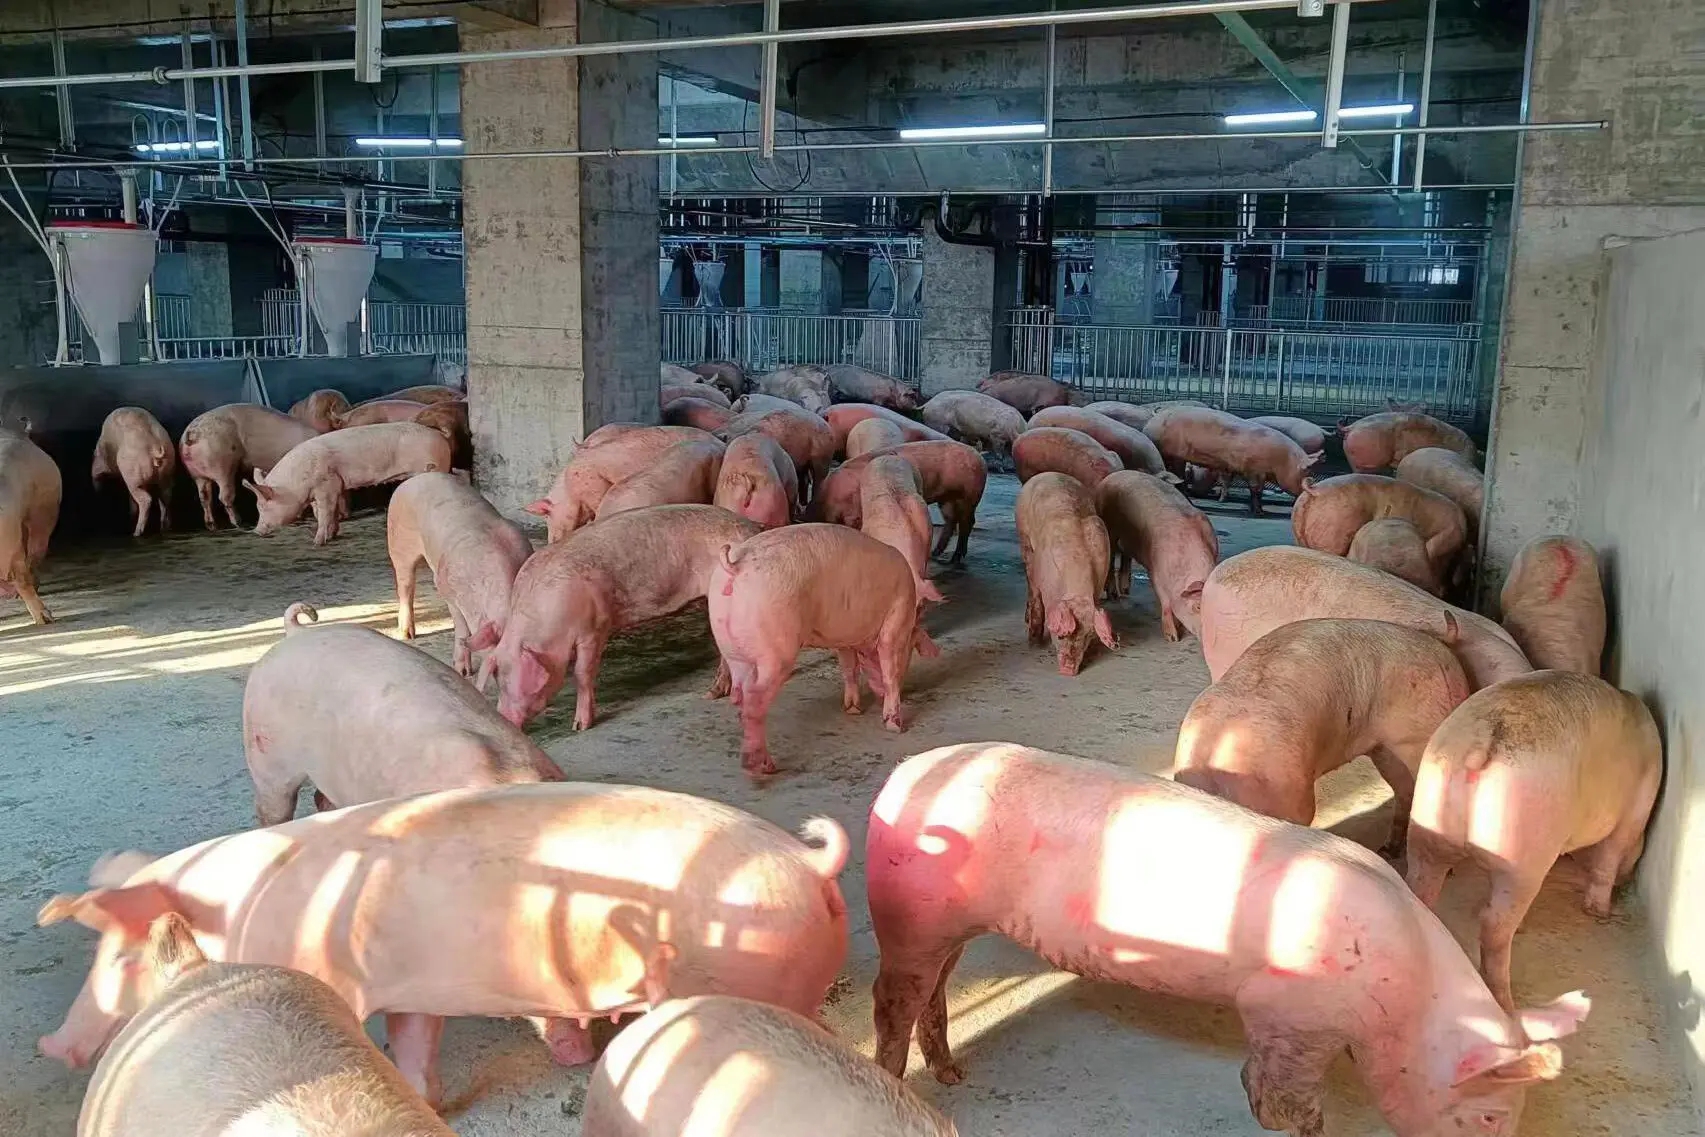 Bên trong toà nhà nuôi lợn sừng sững ở Trung Quốc - Ảnh 6.